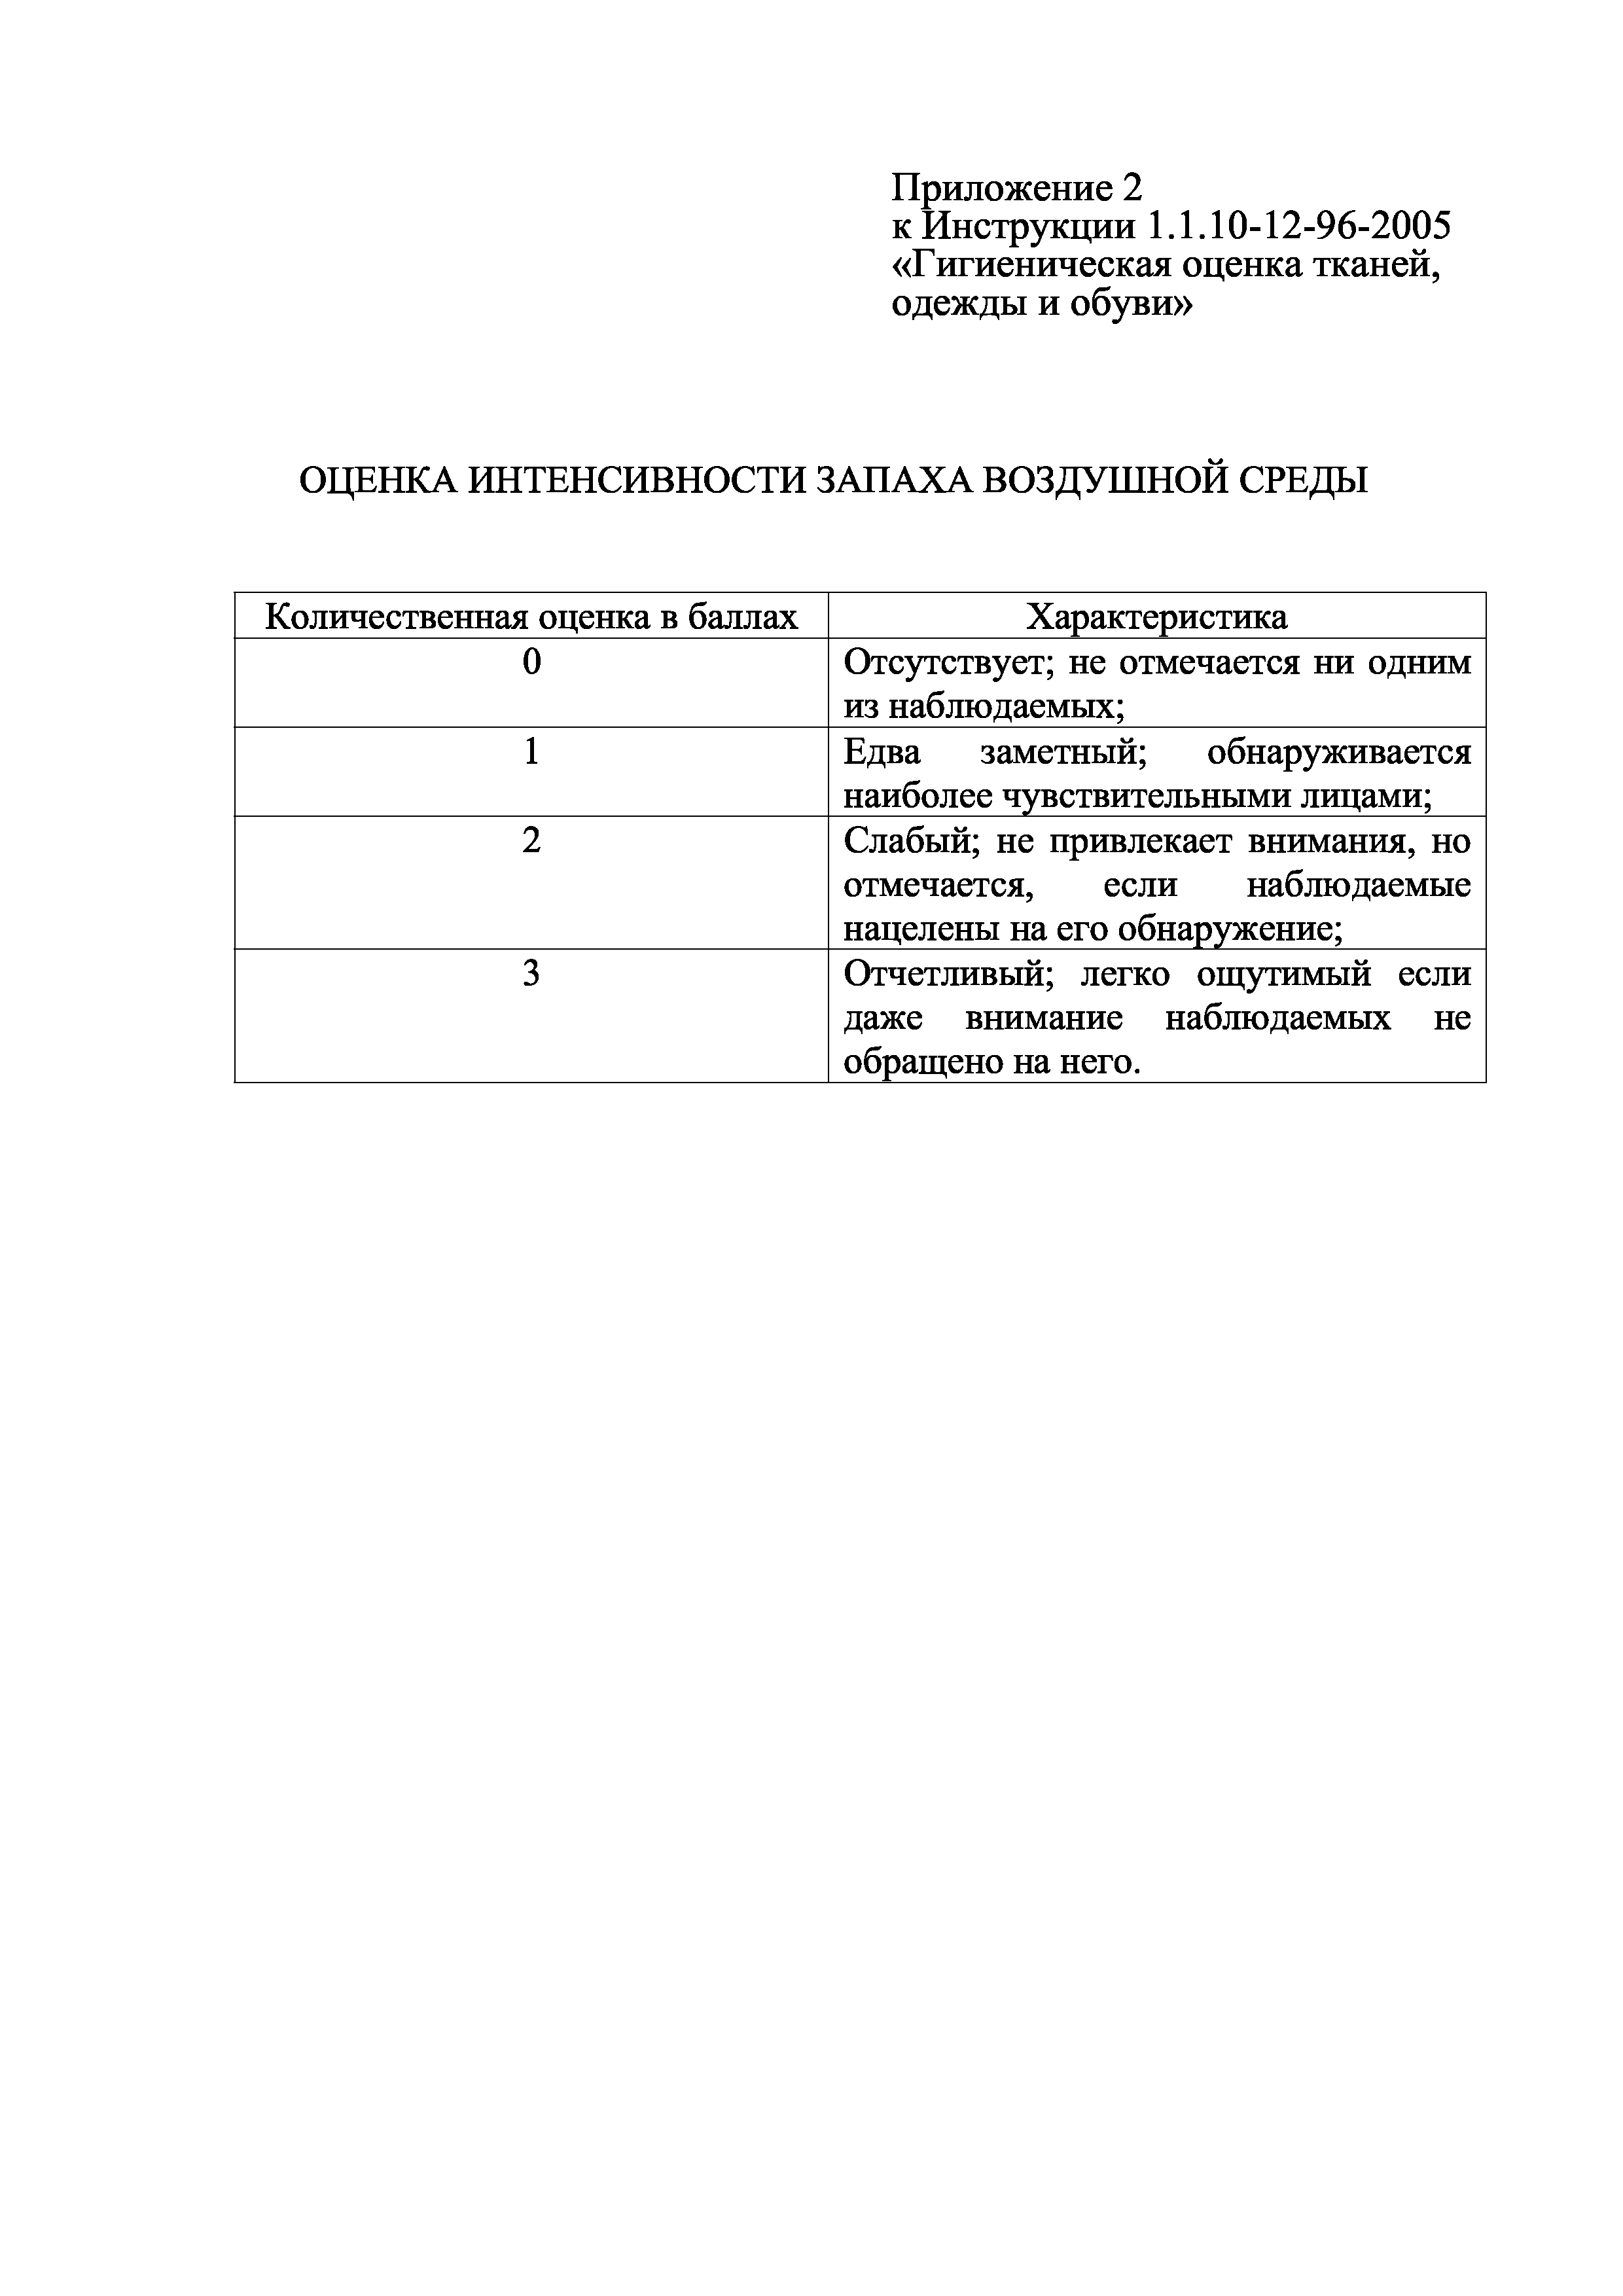 Инструкция 1.1.10-12-96-2005